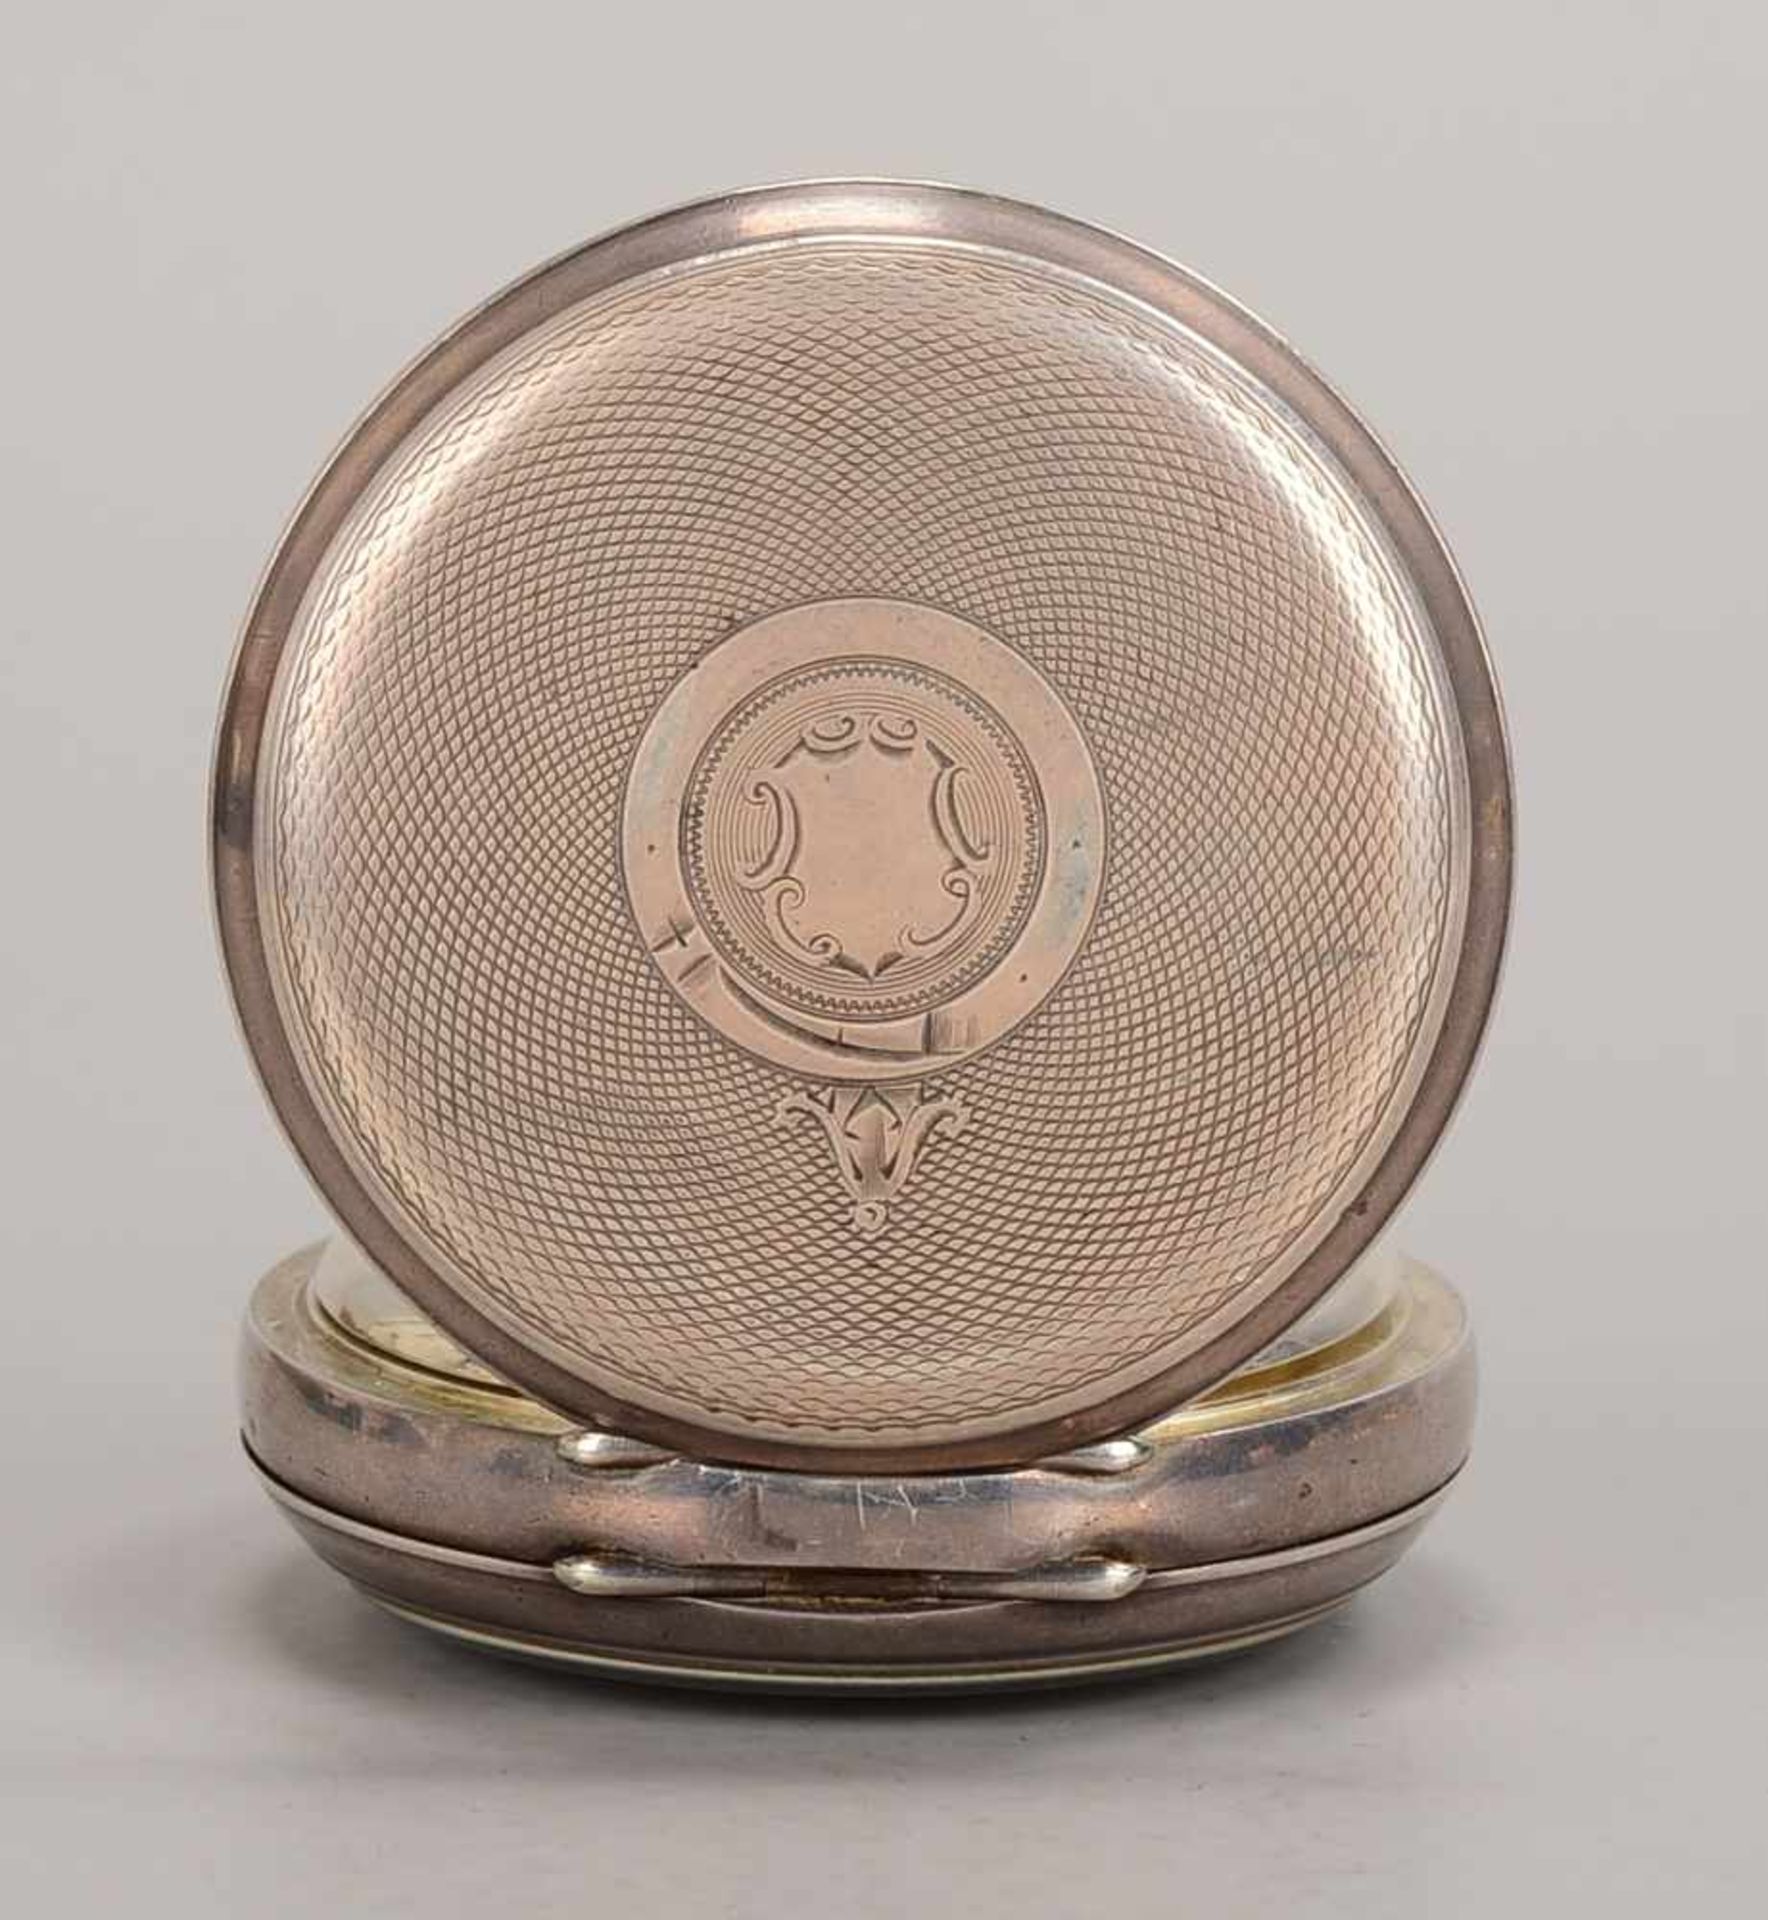 Taschenuhr, Sheffield, Swiss Made, 935 Silber (punziert), Deckel aufwendig graviert/Monogrammfeld - Bild 3 aus 3